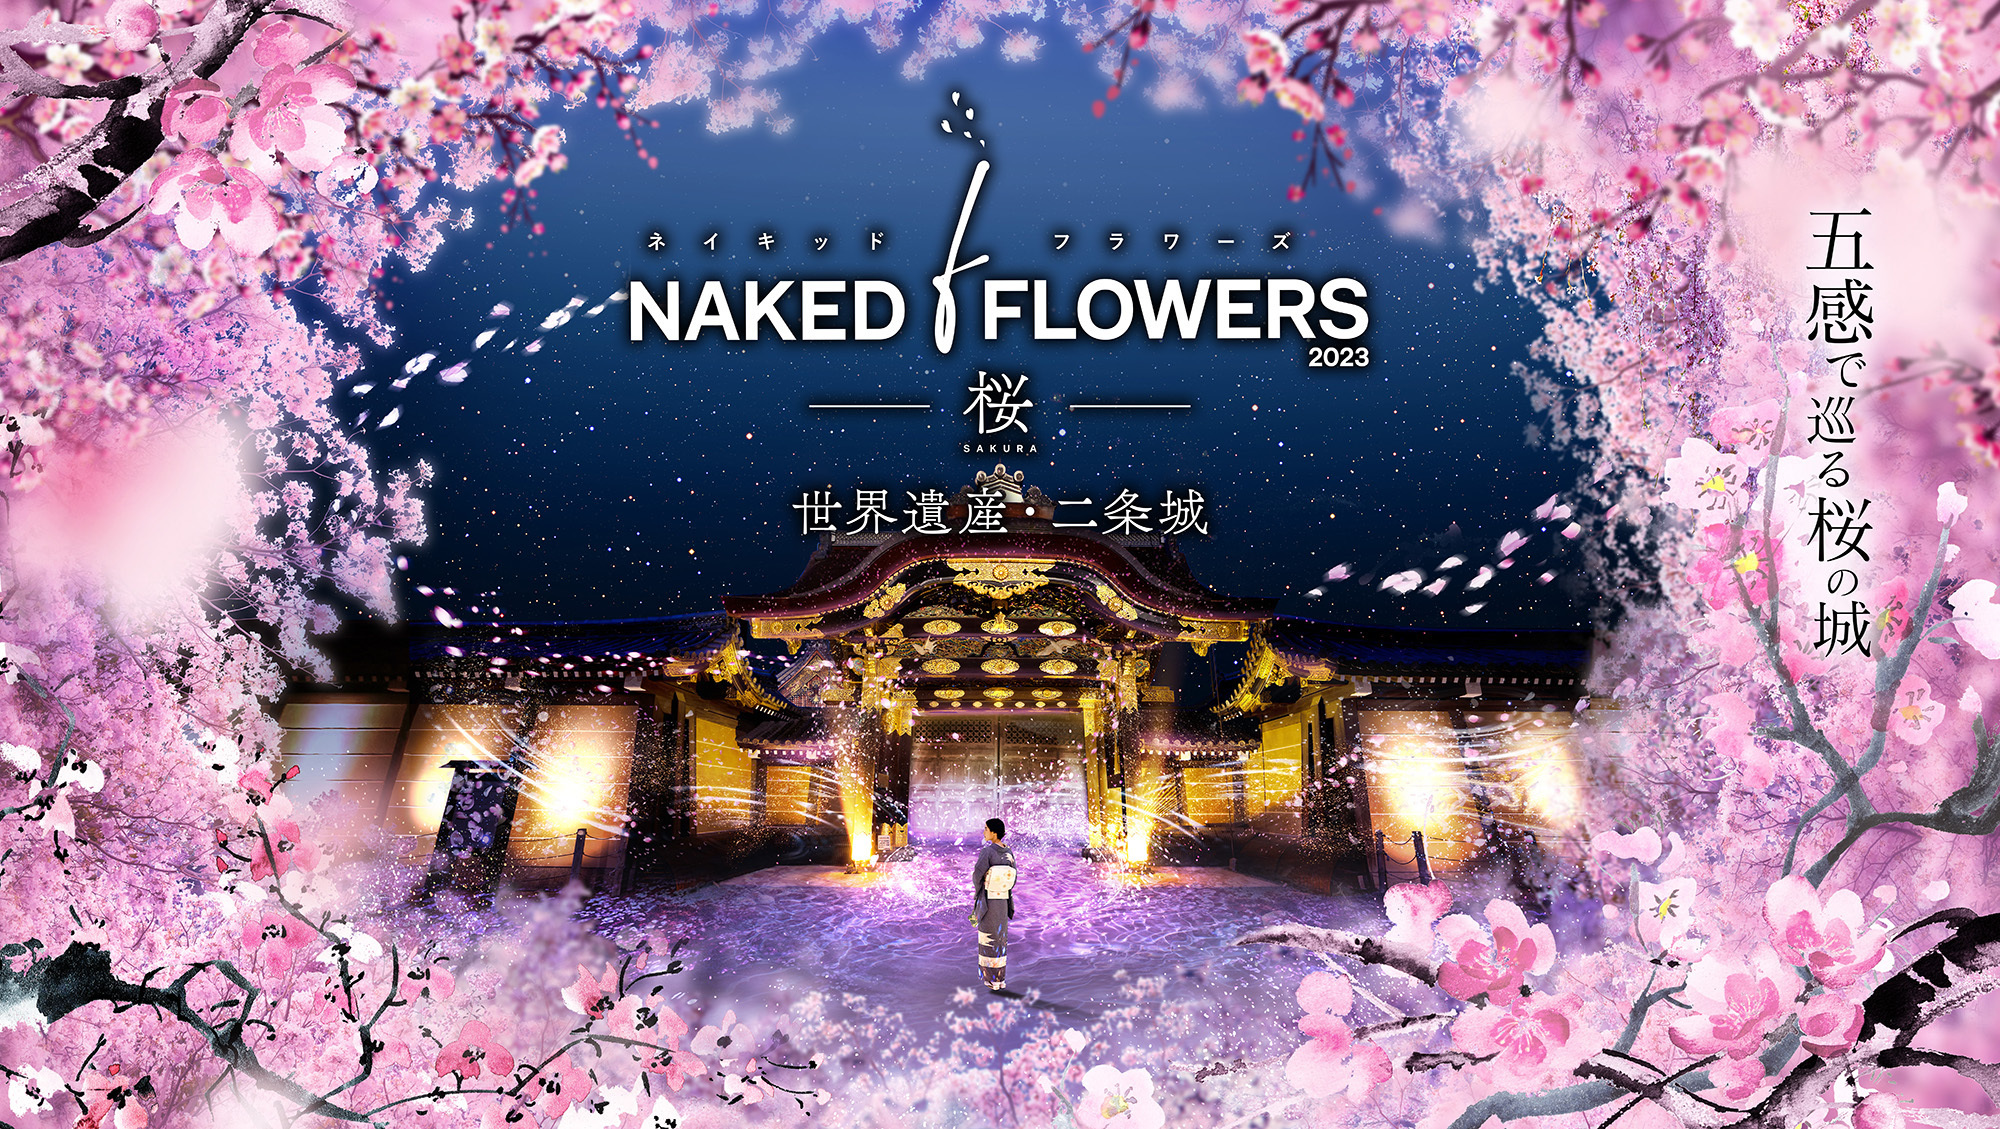 五感で巡る桜のアートイベント『NAKED FLOWERS 2023 桜 世界遺産 